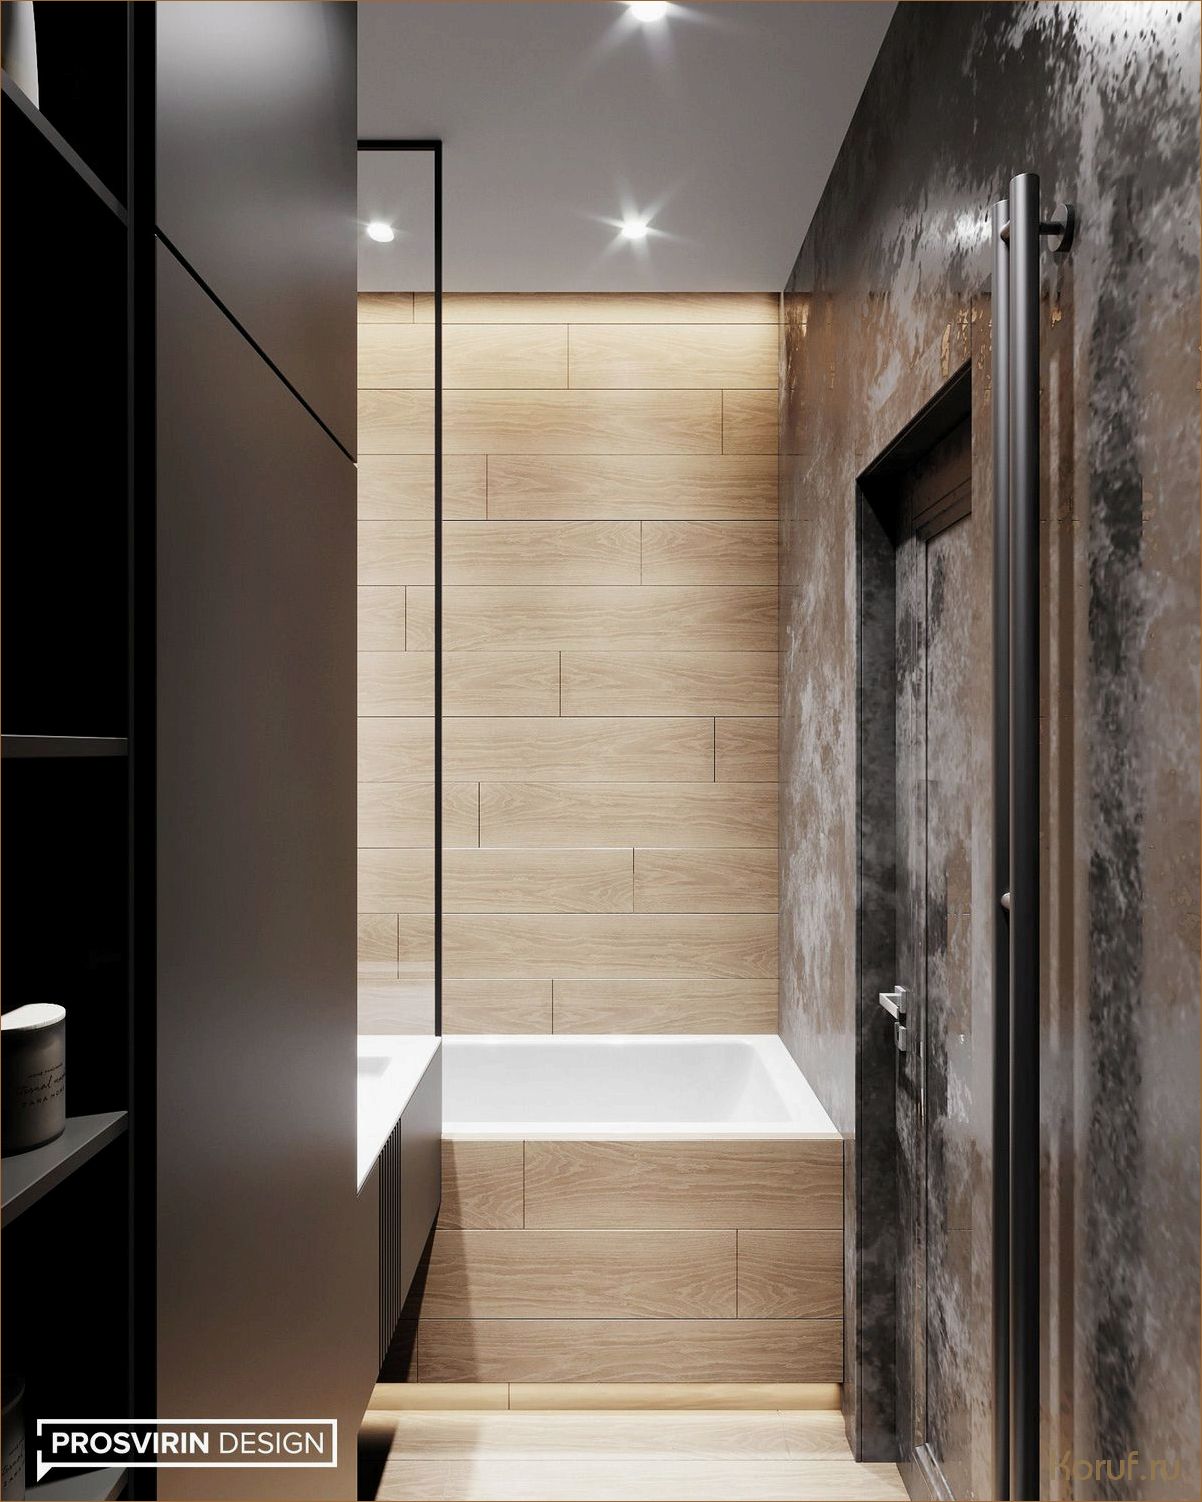 Стиль и элегантность: Черный туалет дизайн как новый тренд в интерьере.